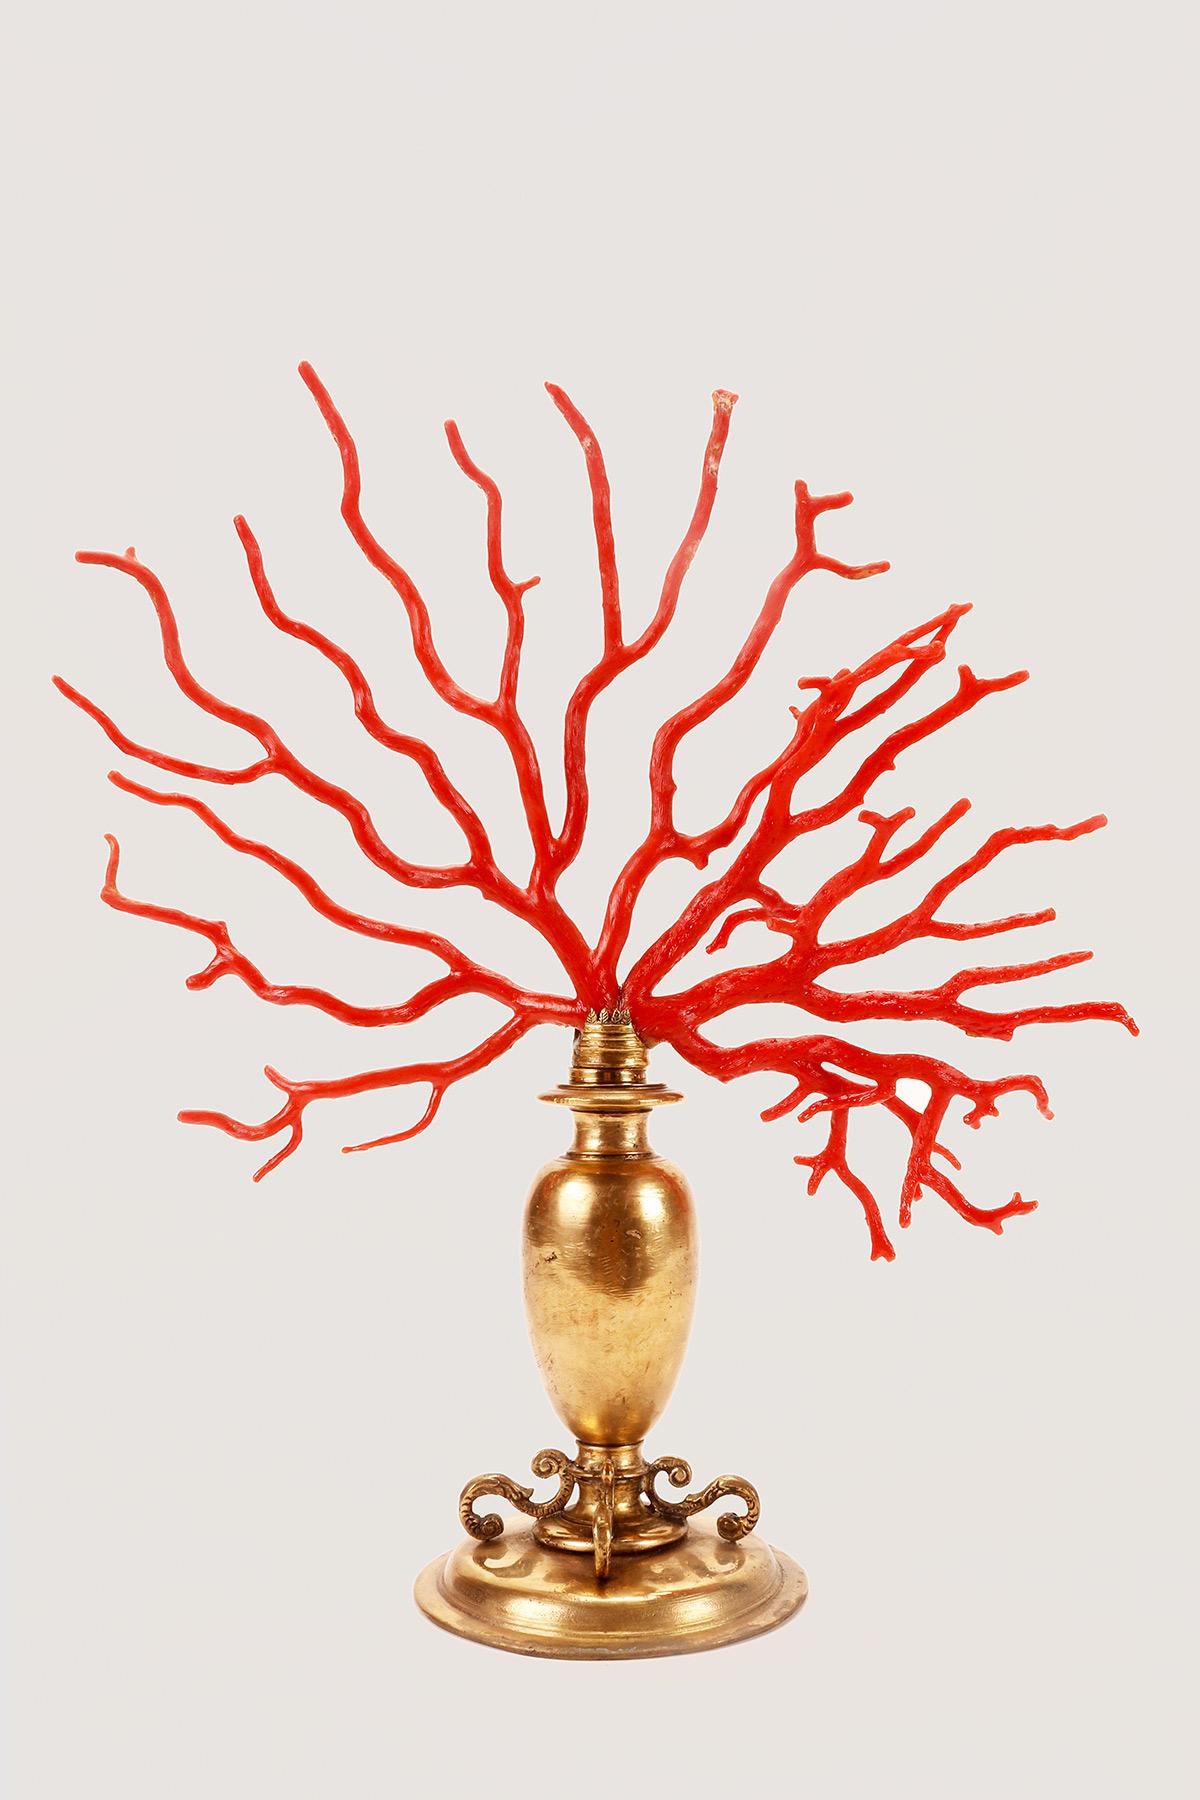 Dieser große Zweig der Mittelmeerkoralle 'Corallium Rubrum' ist auf einem Sockel aus vergoldeter Bronze montiert. Für die Herstellung des amphorenförmigen Sockels kommen verschiedene Techniken zum Einsatz: Wachsausschmelzverfahren, Formguss,